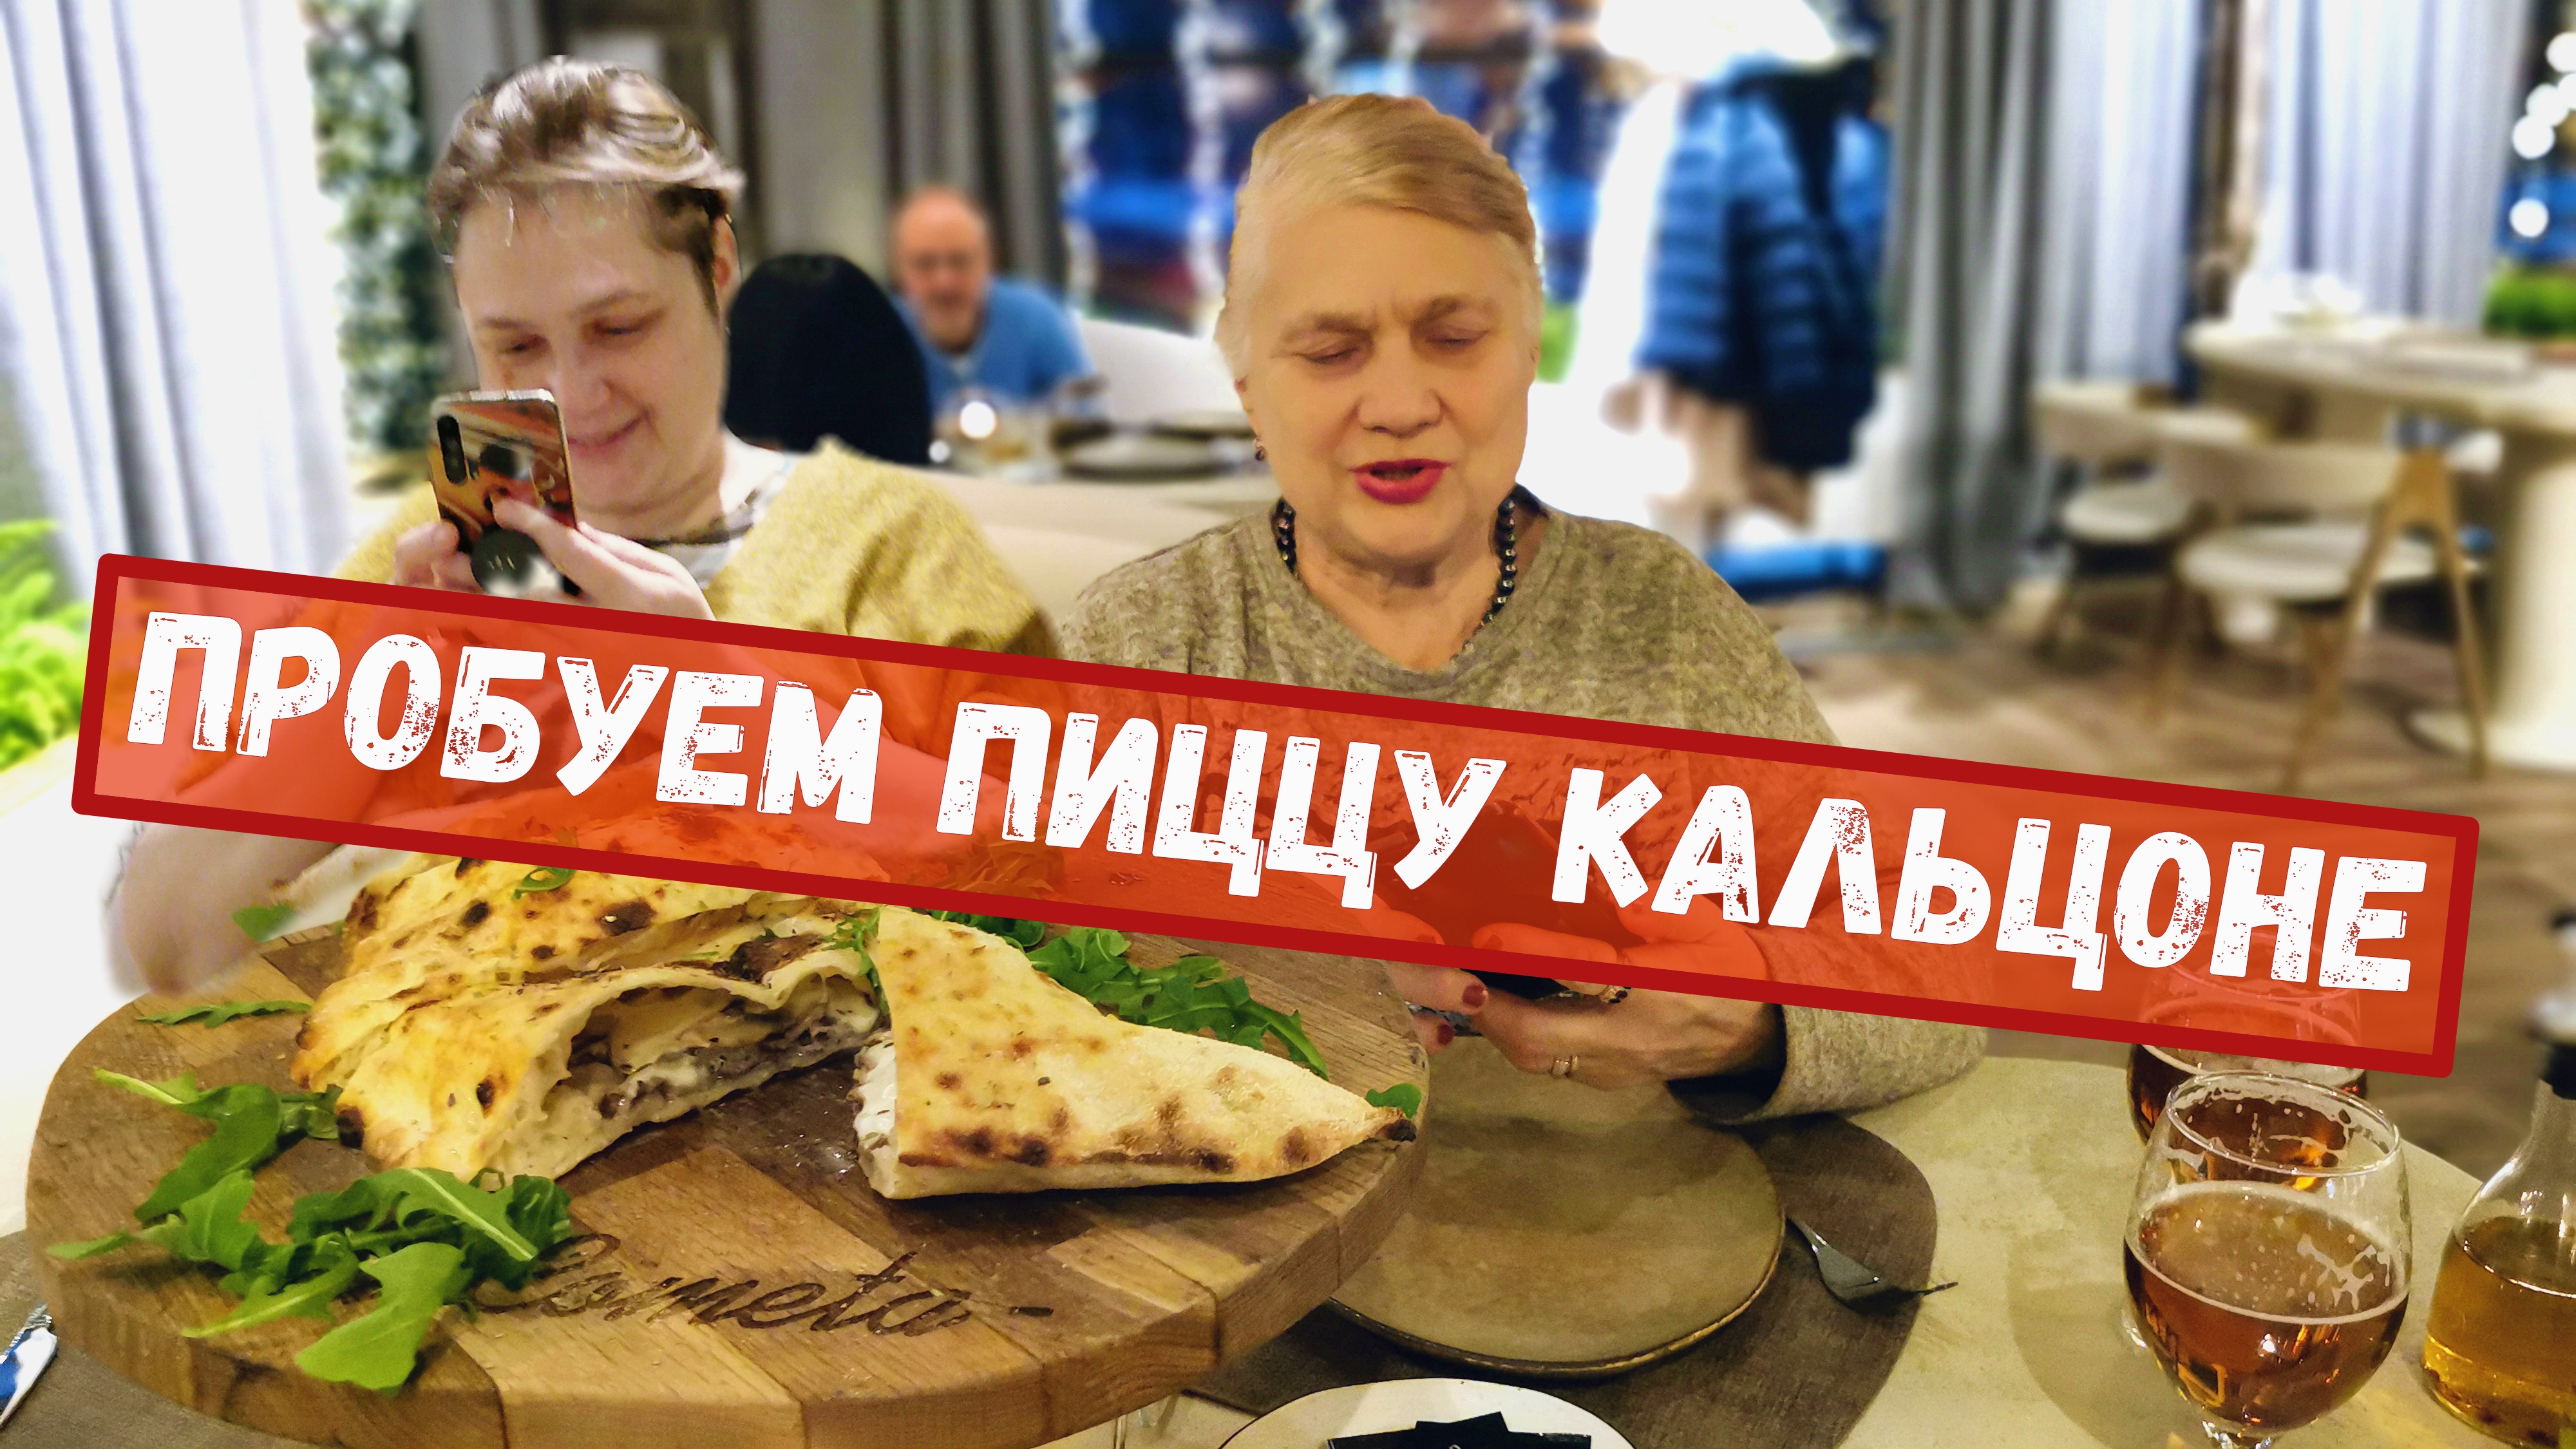 Пробуем пиццу Кальцоне в ресторане La Cometa. Москва